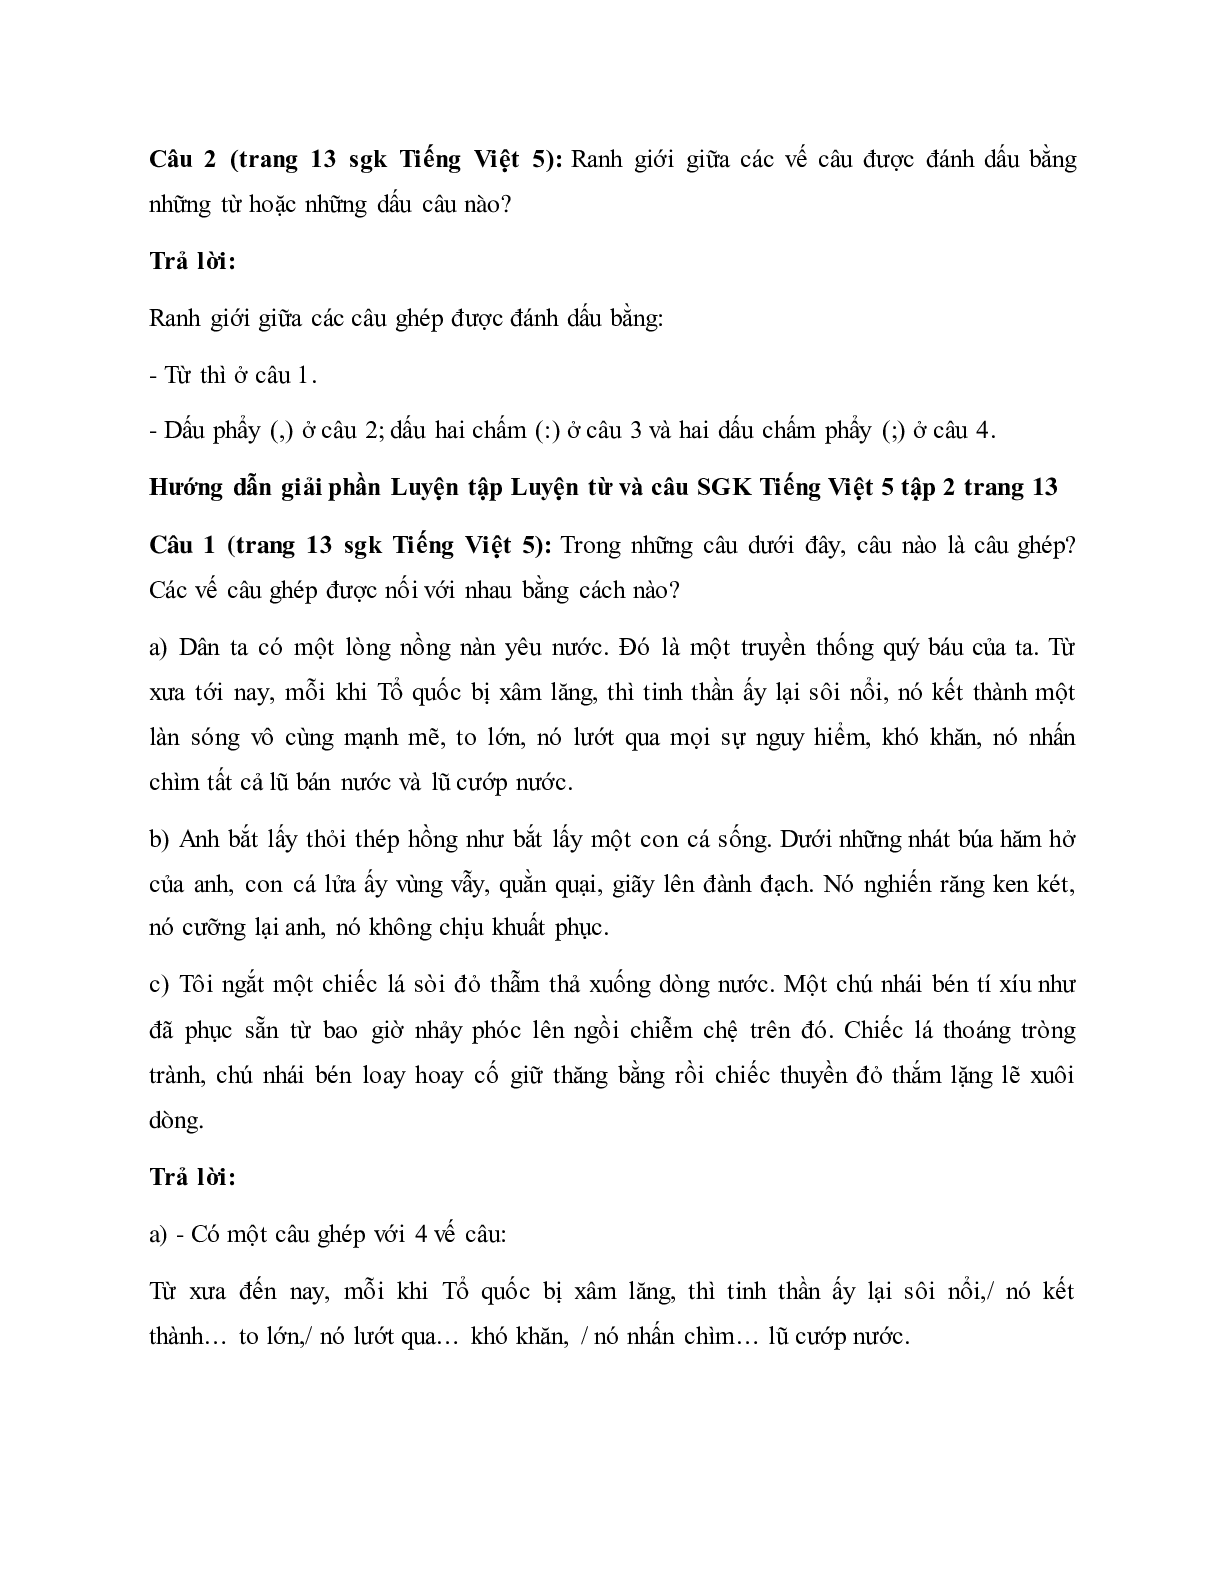 Soạn Tiếng Việt lớp 5: Luyện từ và câu: Cách nối các vế câu ghép mới nhất (trang 2)